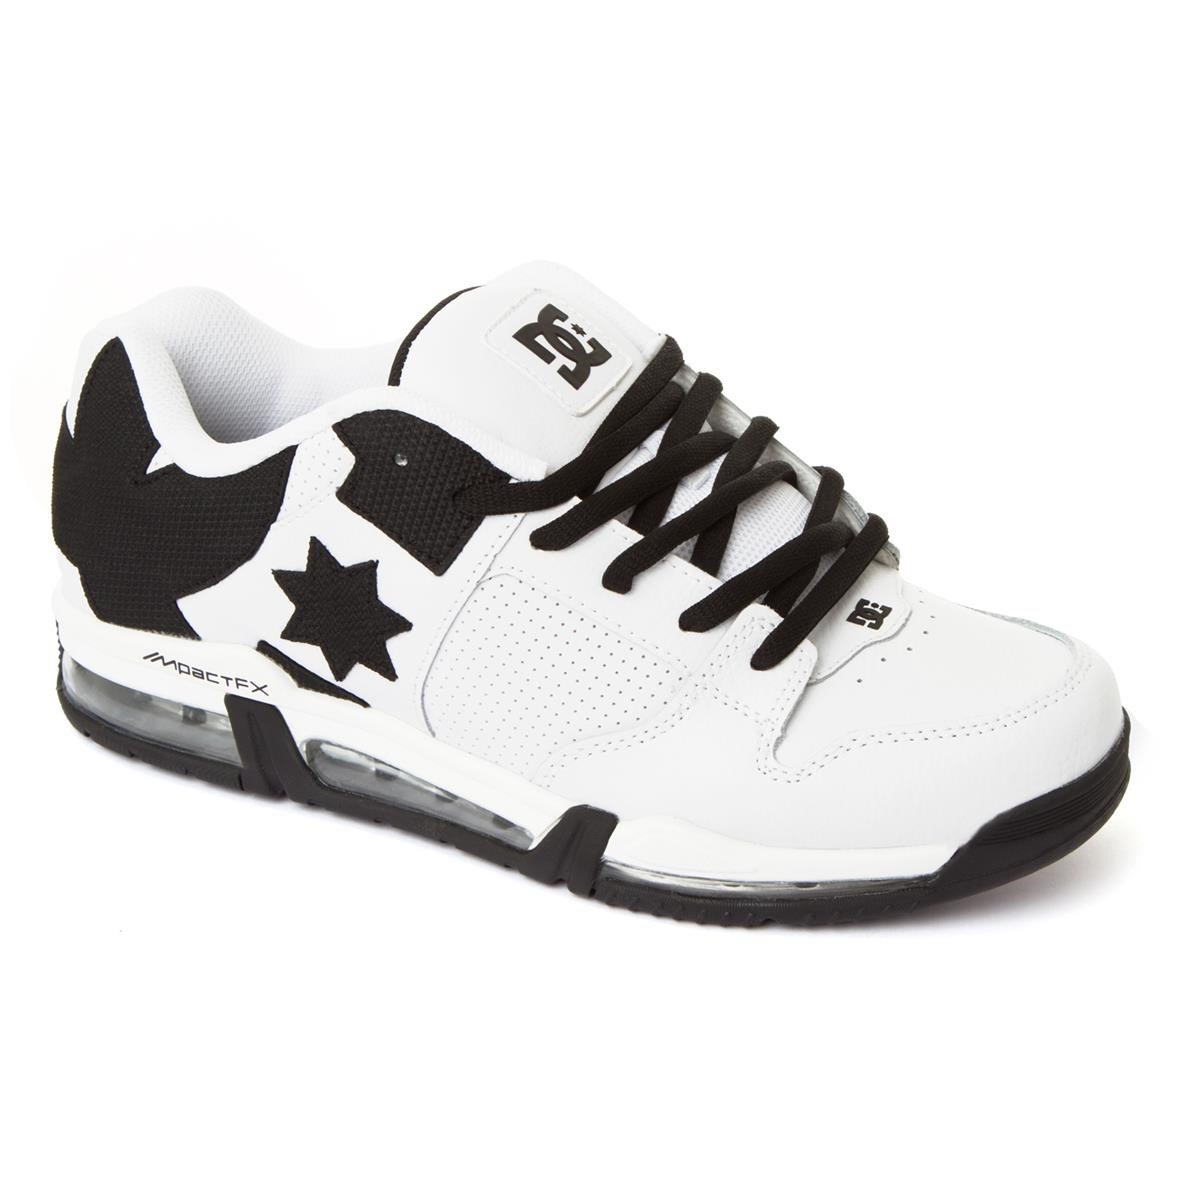 Freizeit/Streetwear Bekleidung-Schuhe - DC Schuhe Command FX White/Black